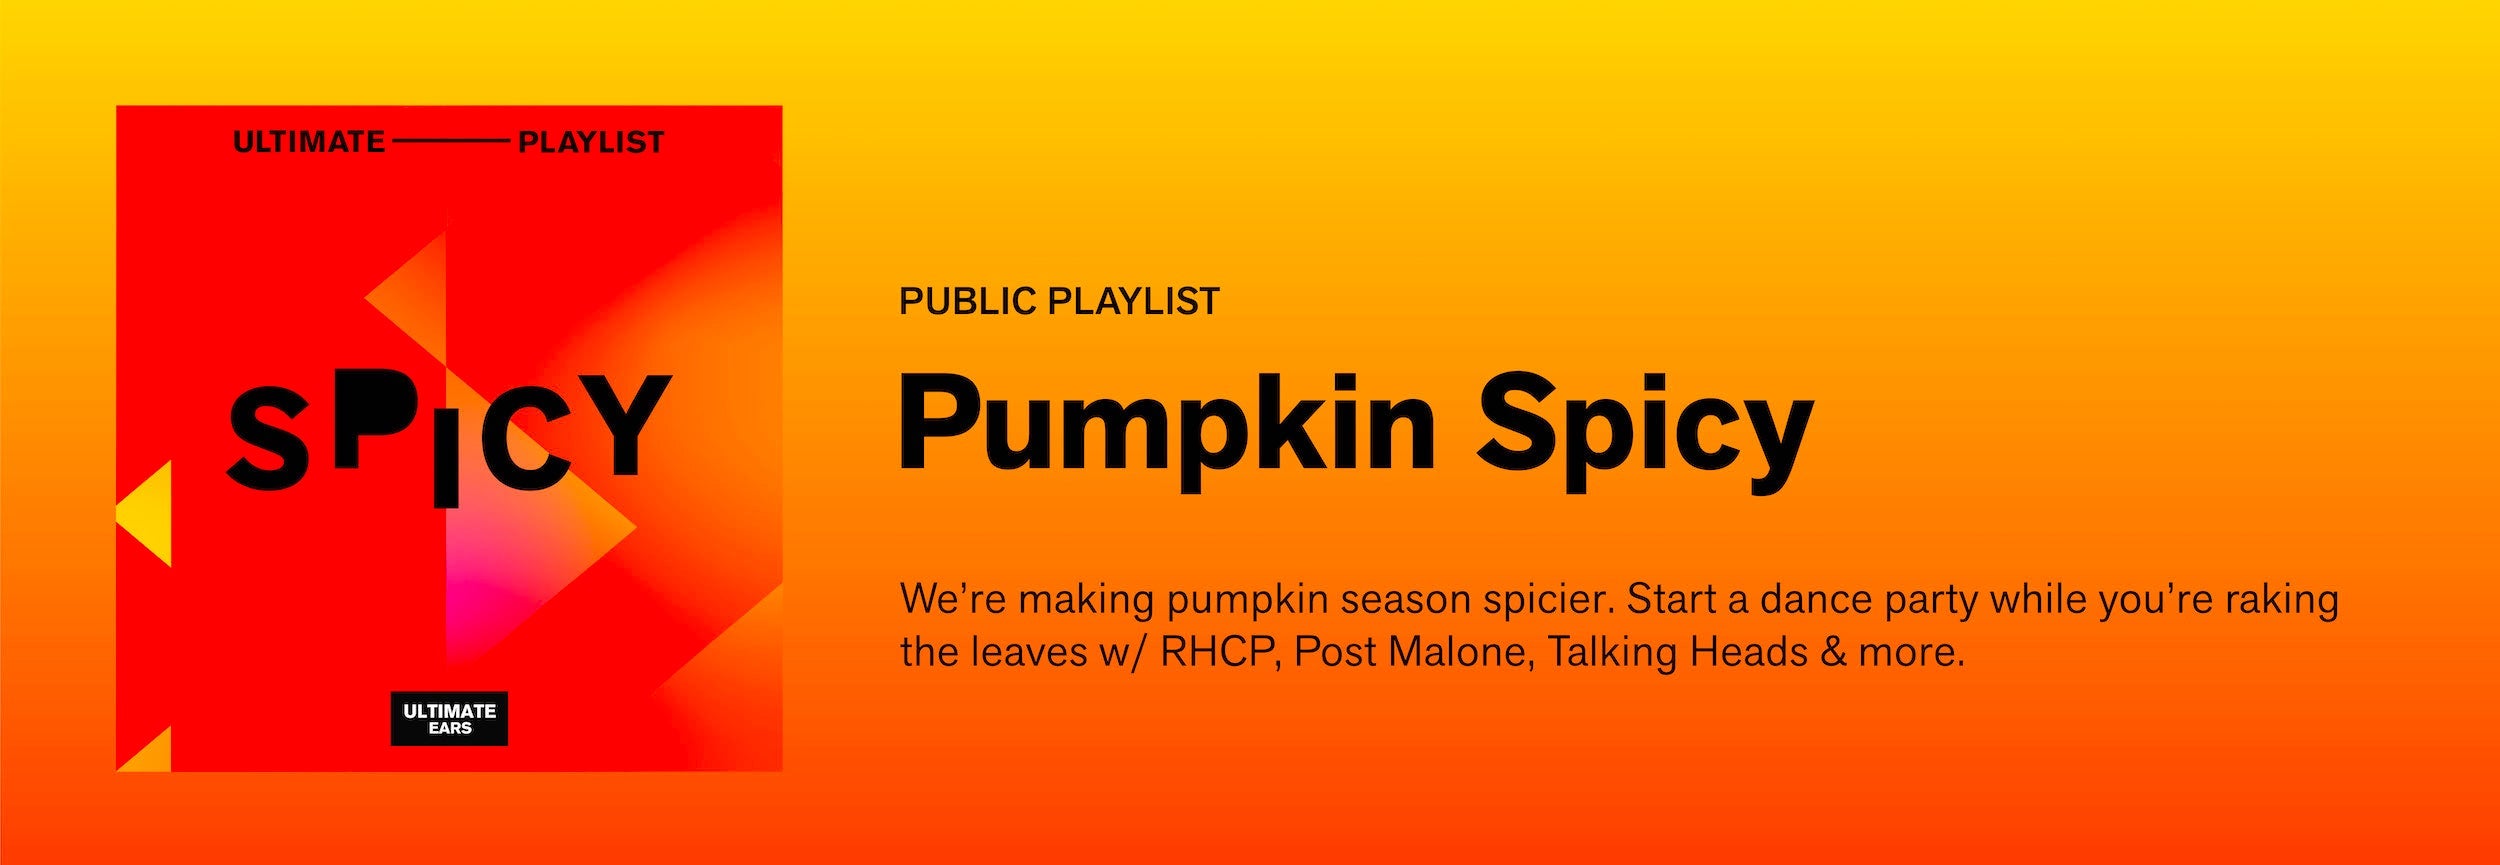 Playlist: Pumpkin Spicy